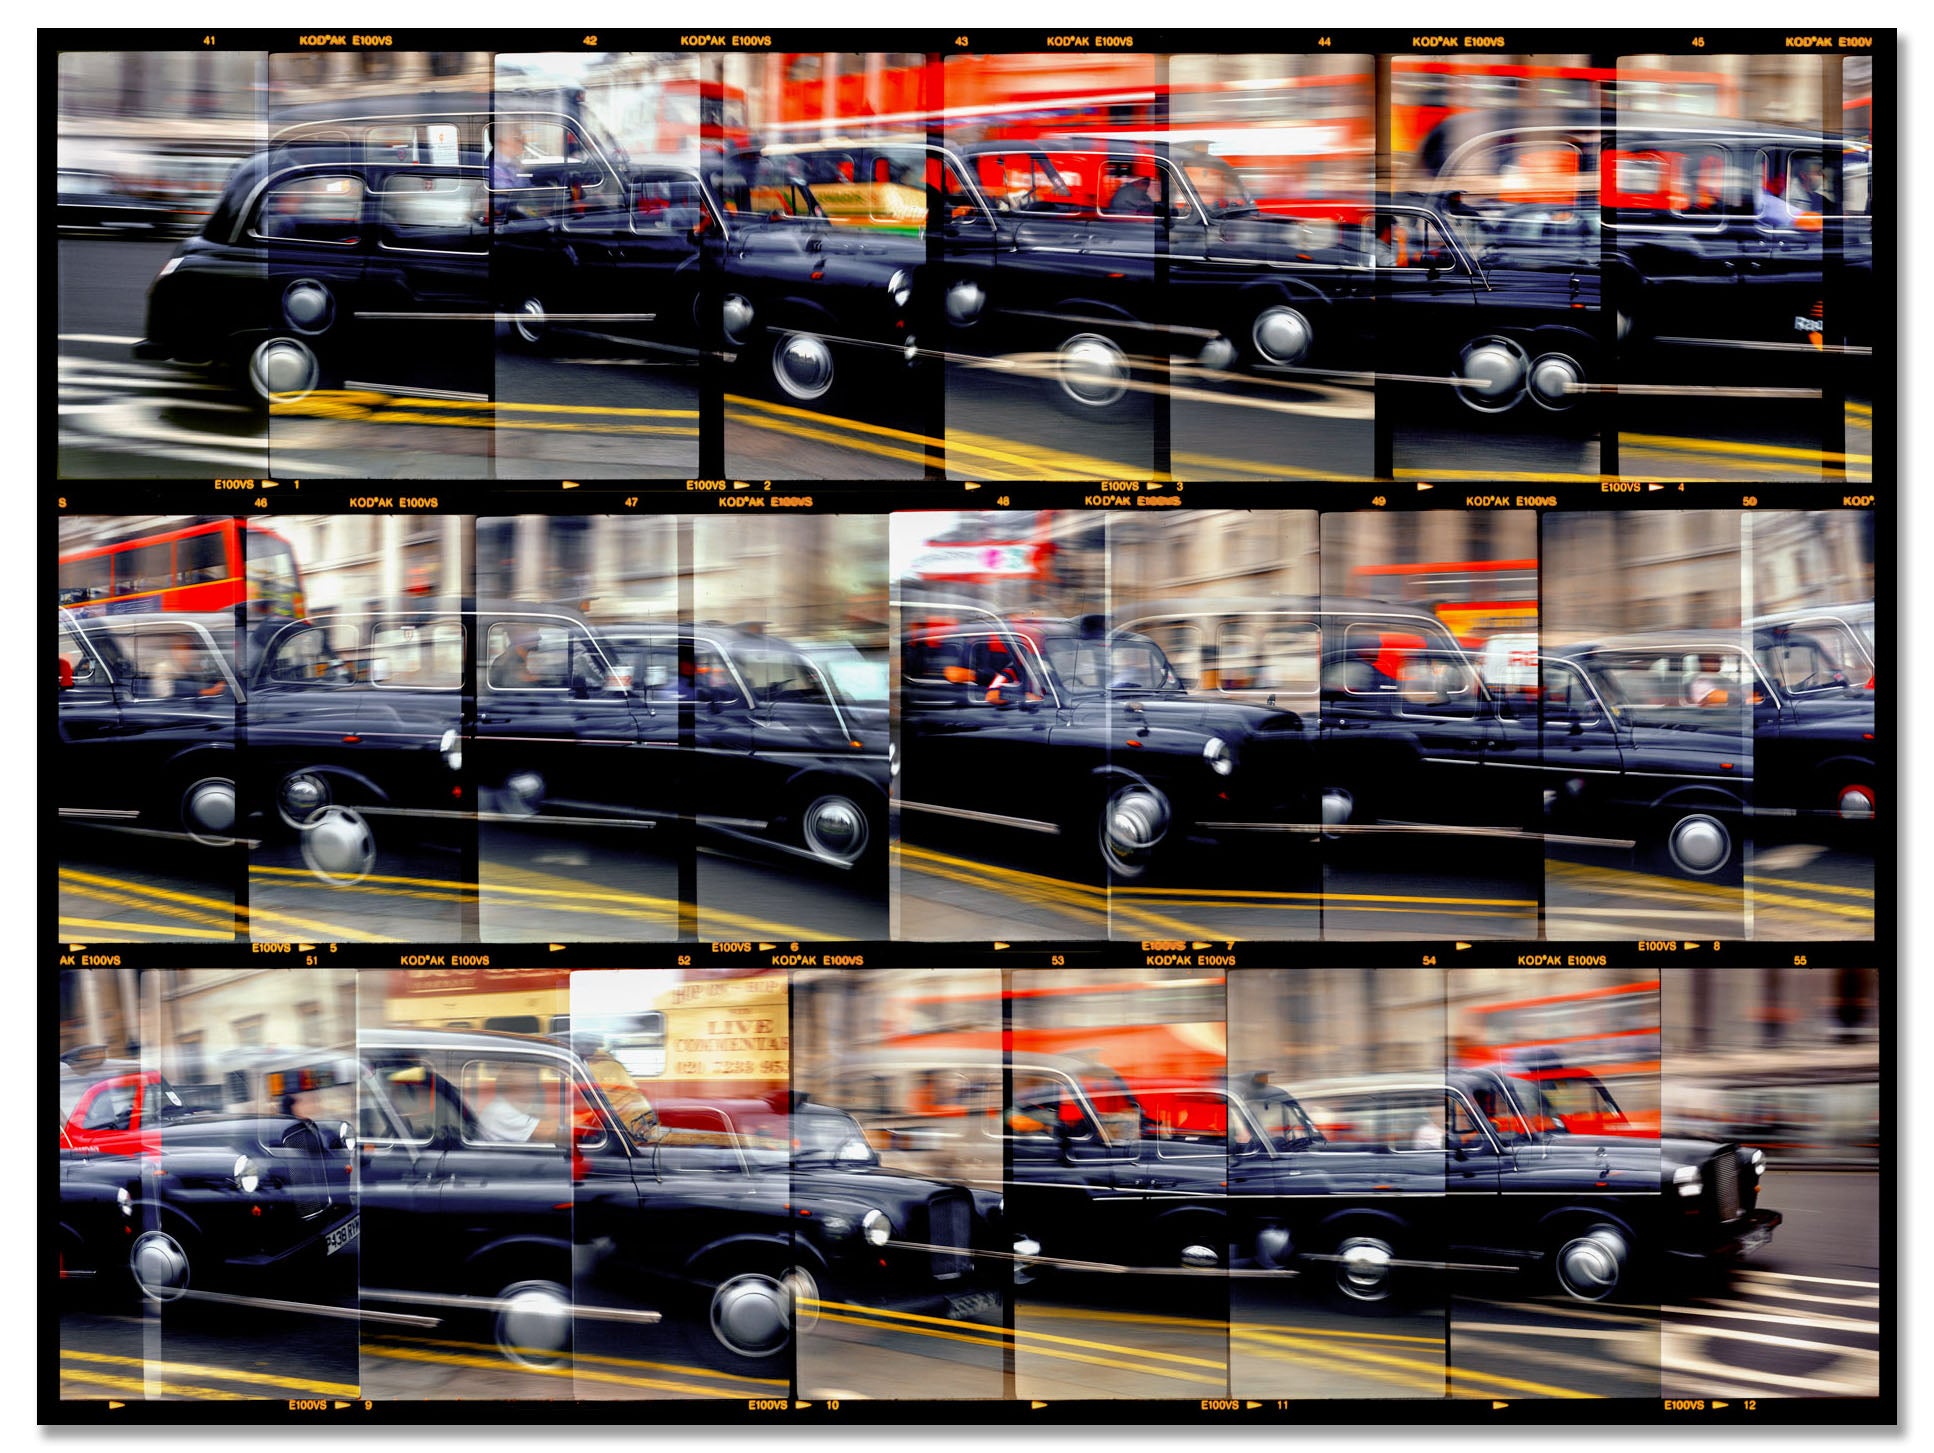 London Taxis, Trafalgar Square, 2003